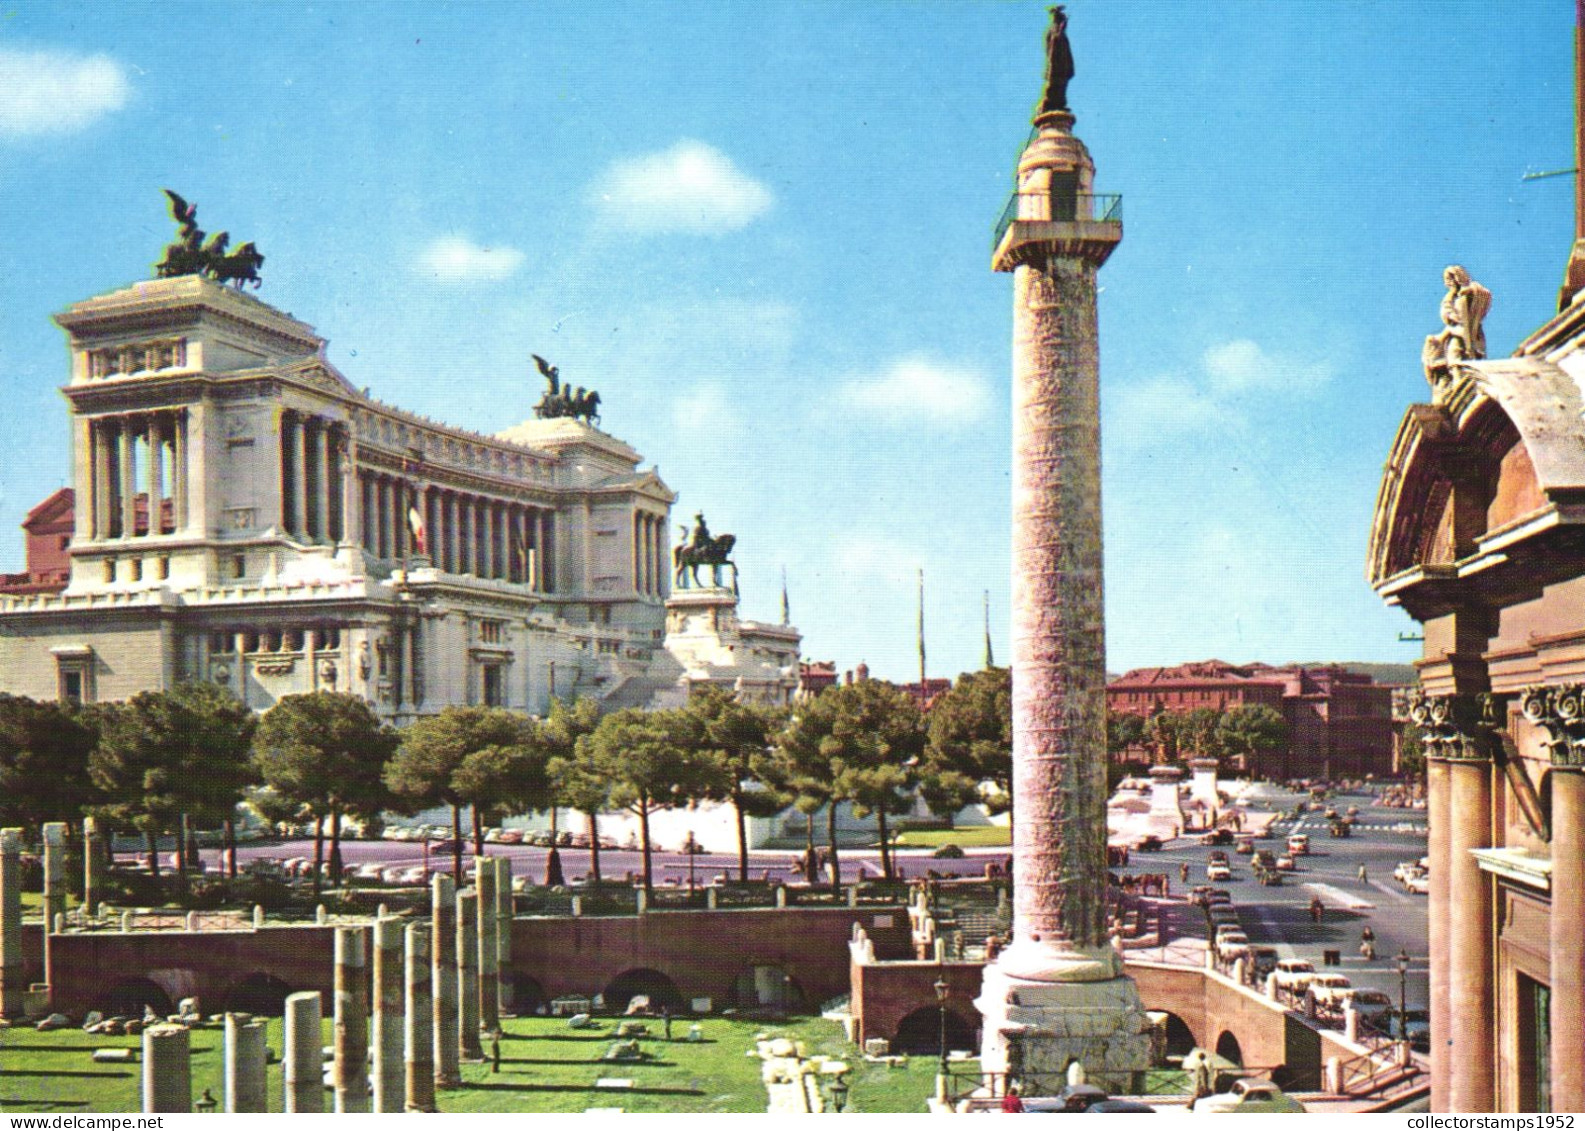 ROME, LAZIO, ALTAR OF THE NATION, ARCHITECTURE, MONUMENT, STATUE, ITALY, POSTCARD - Altare Della Patria